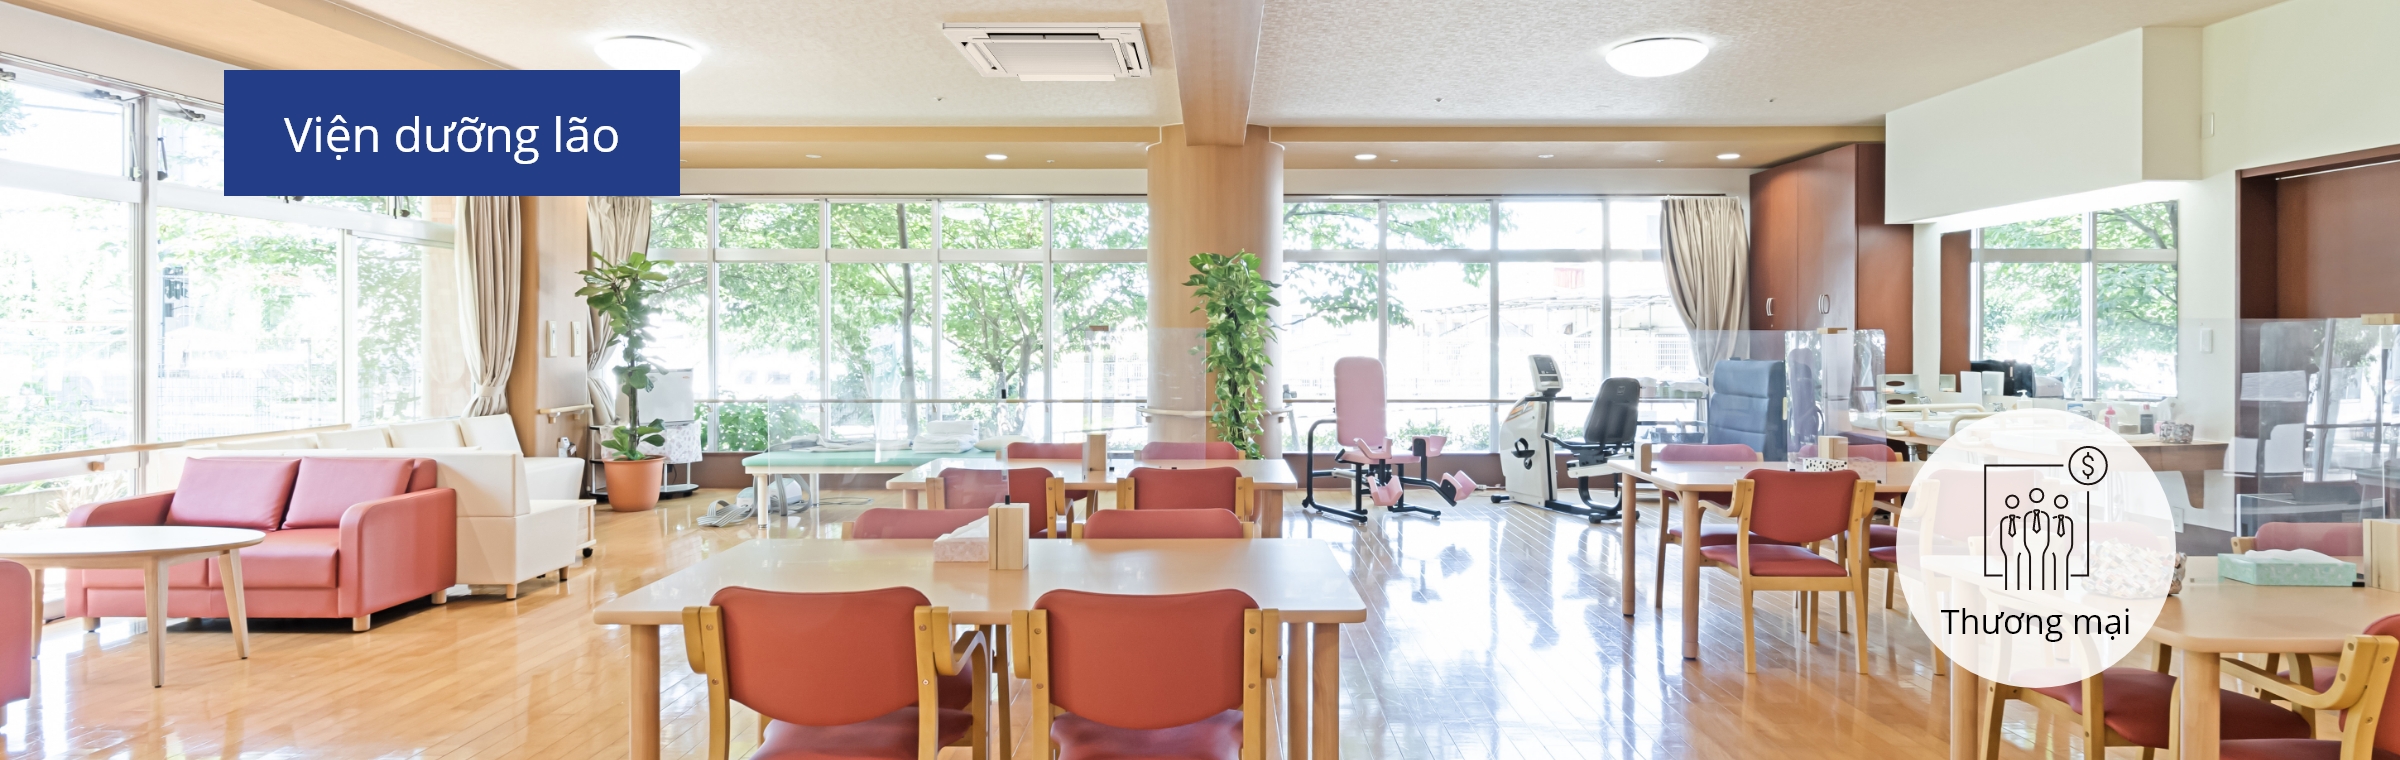 Hình ảnh căn phòng lớn kê bàn ghế tại một viện dưỡng lão.